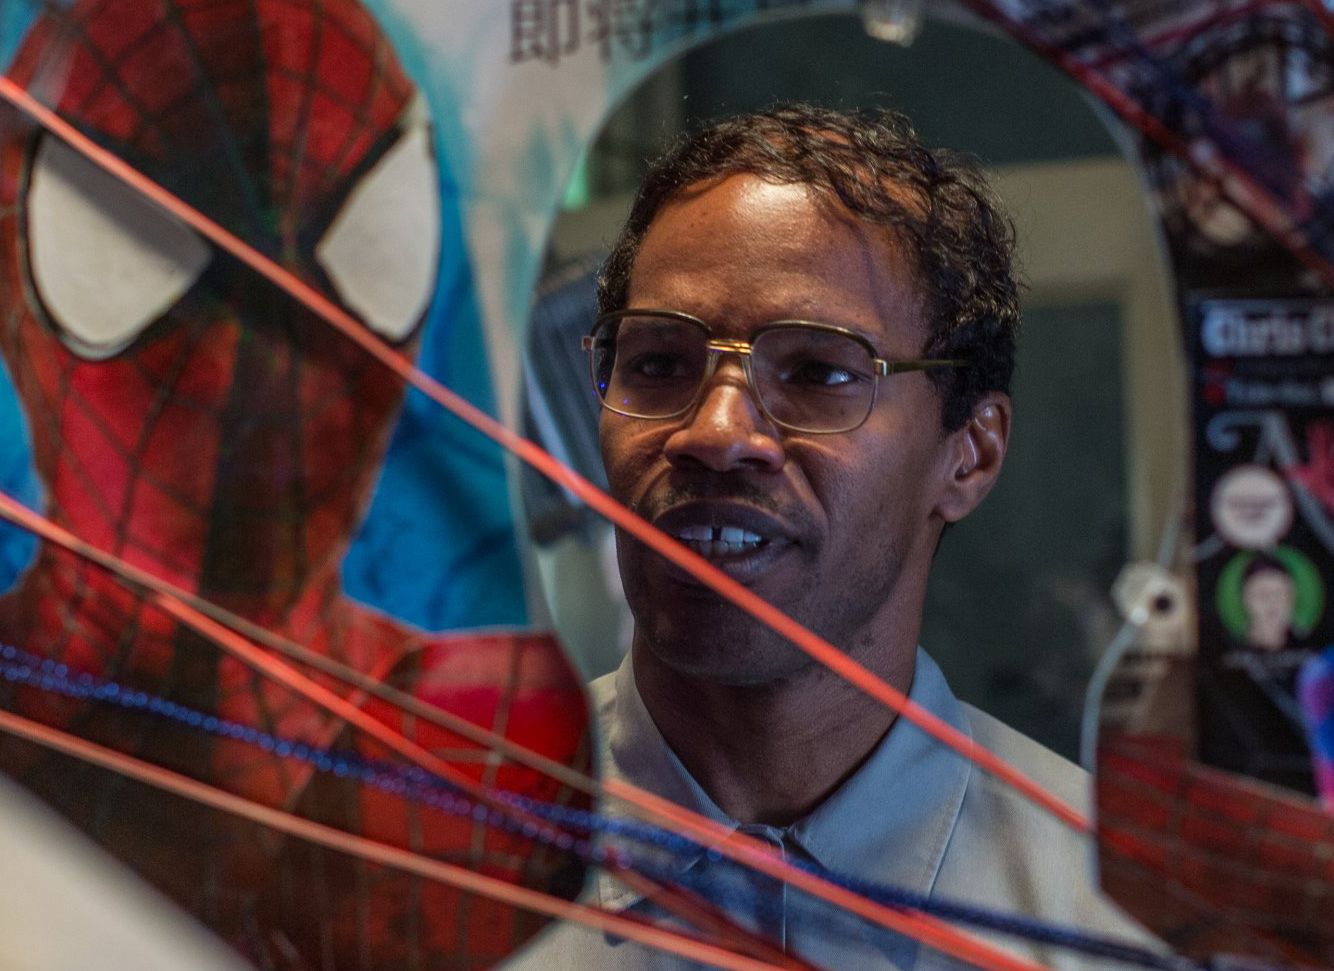 Jamie Foxx in a Spider-web